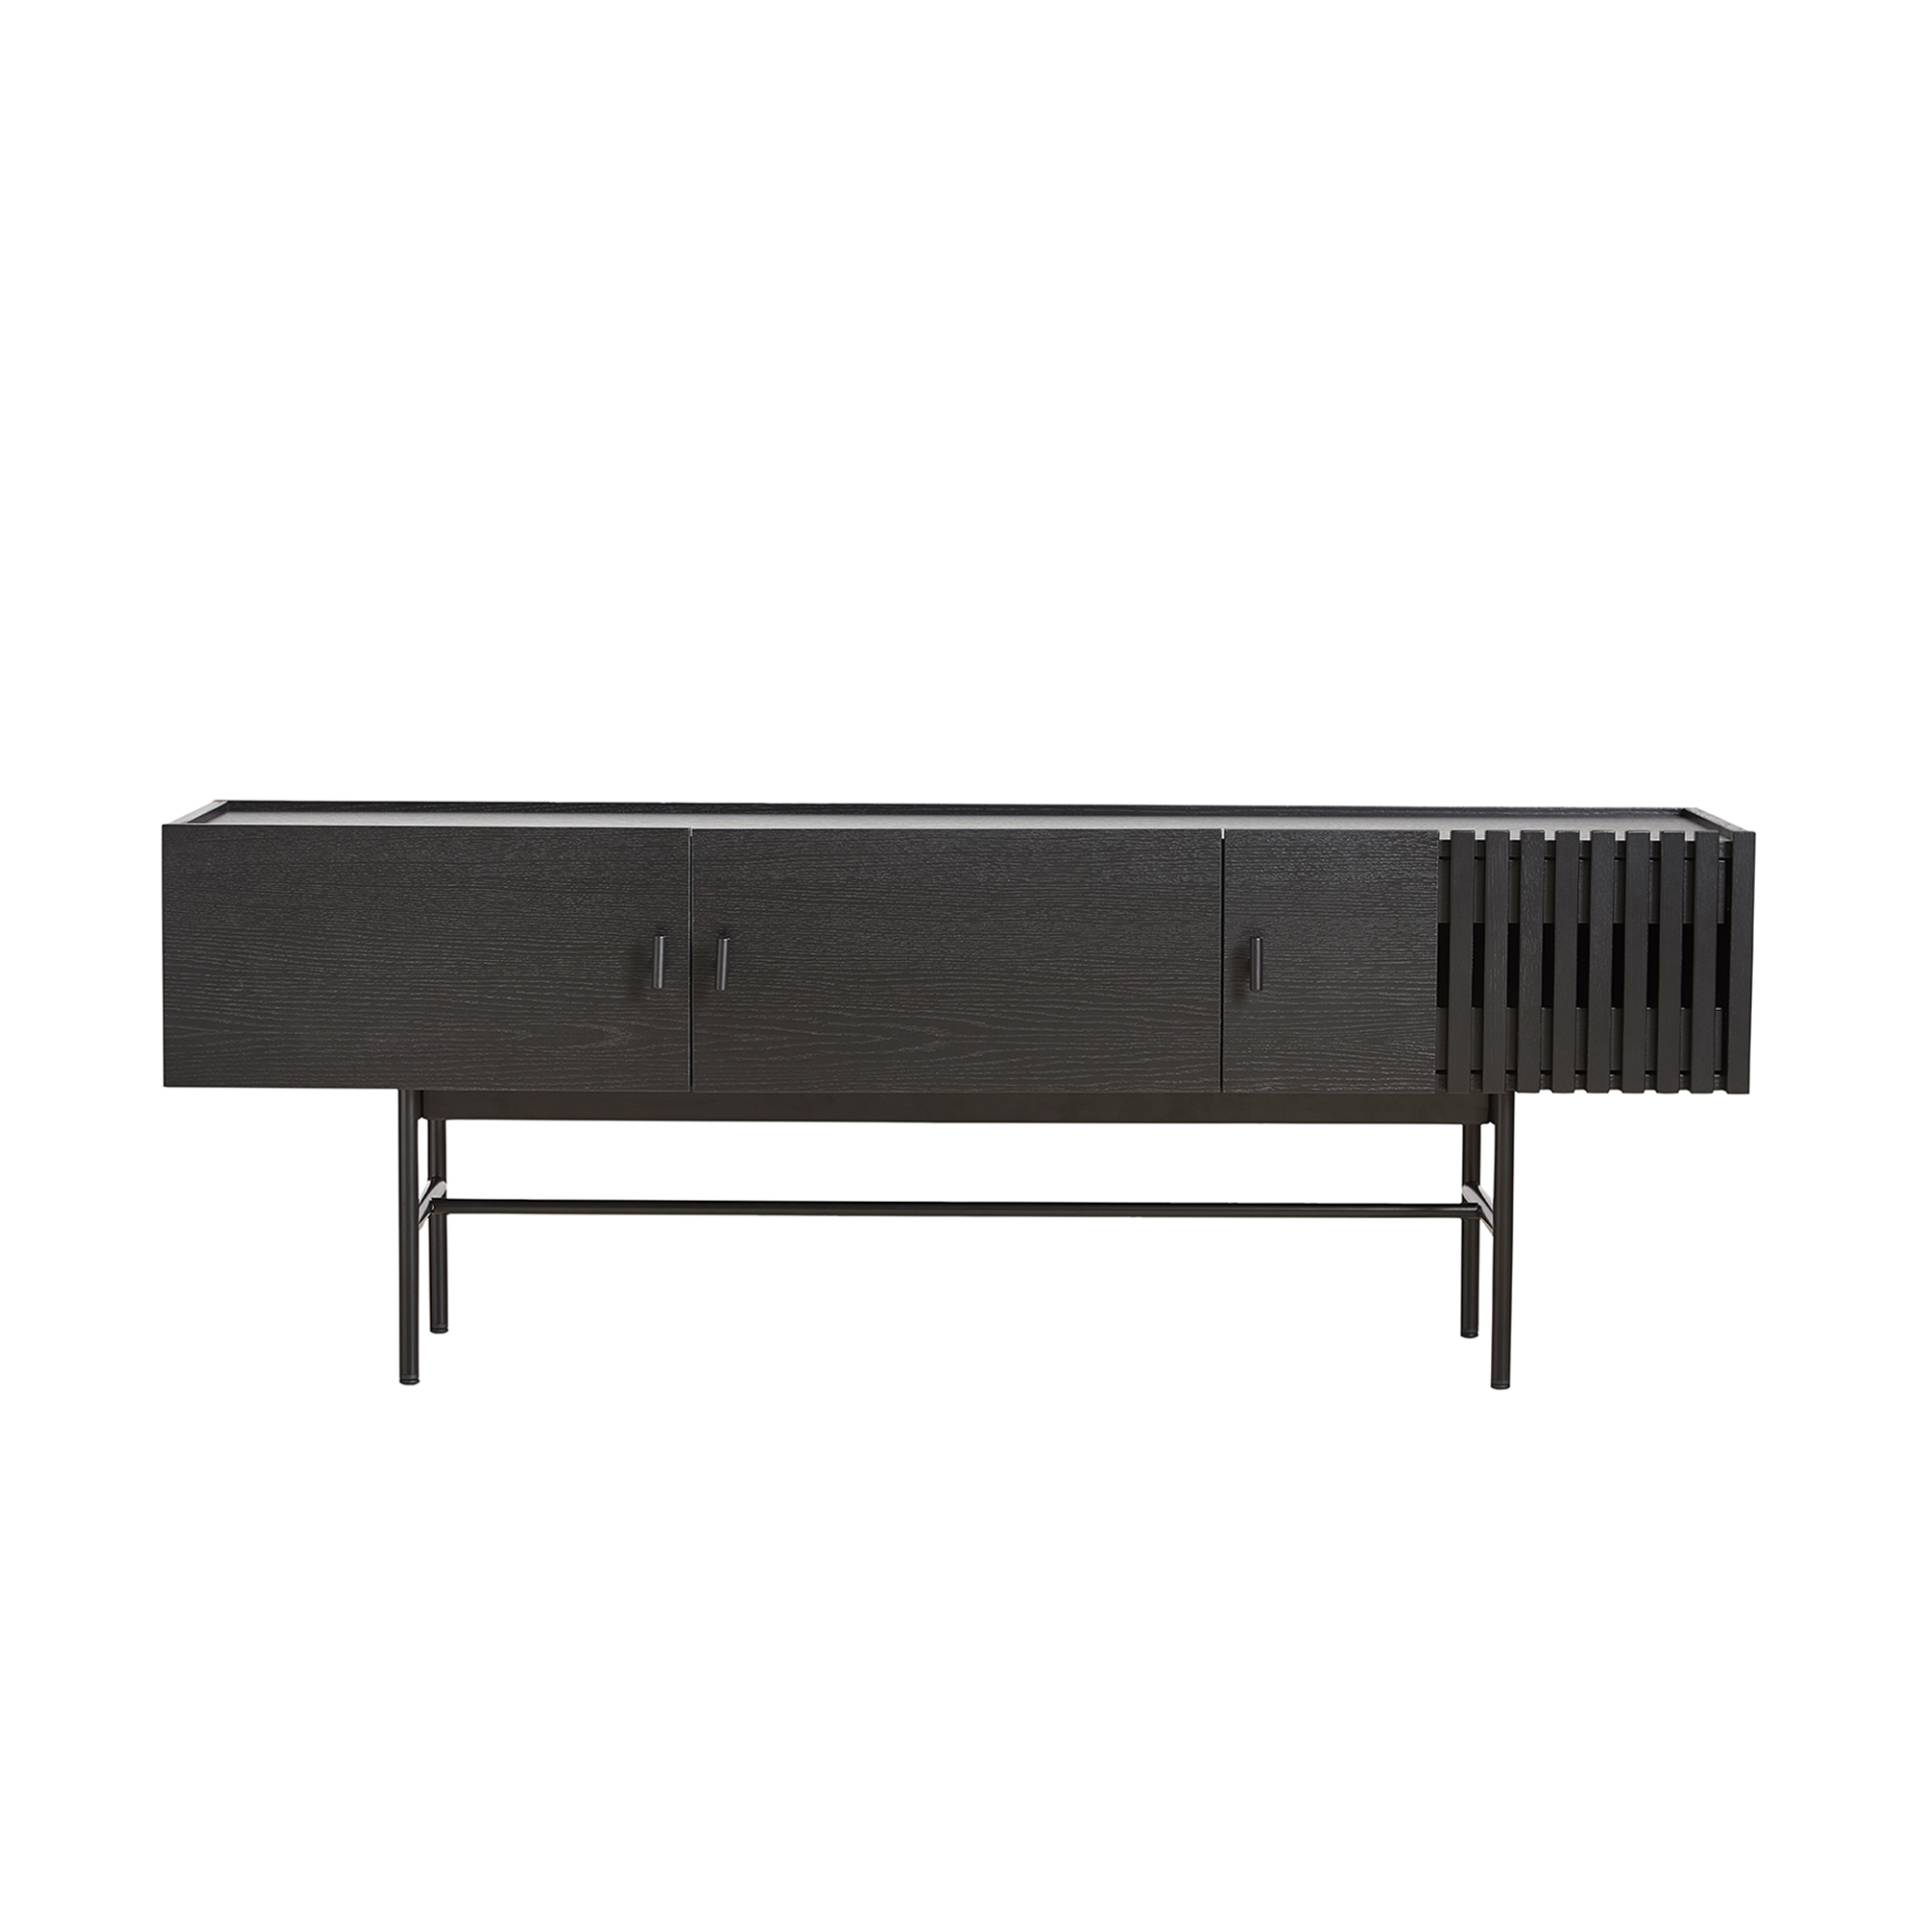 Woud - Array Lowboard 150cm - schwarz/lackiert/Gestell Metall schwarz lackiert/BxHxT 150x53x37cm von Woud